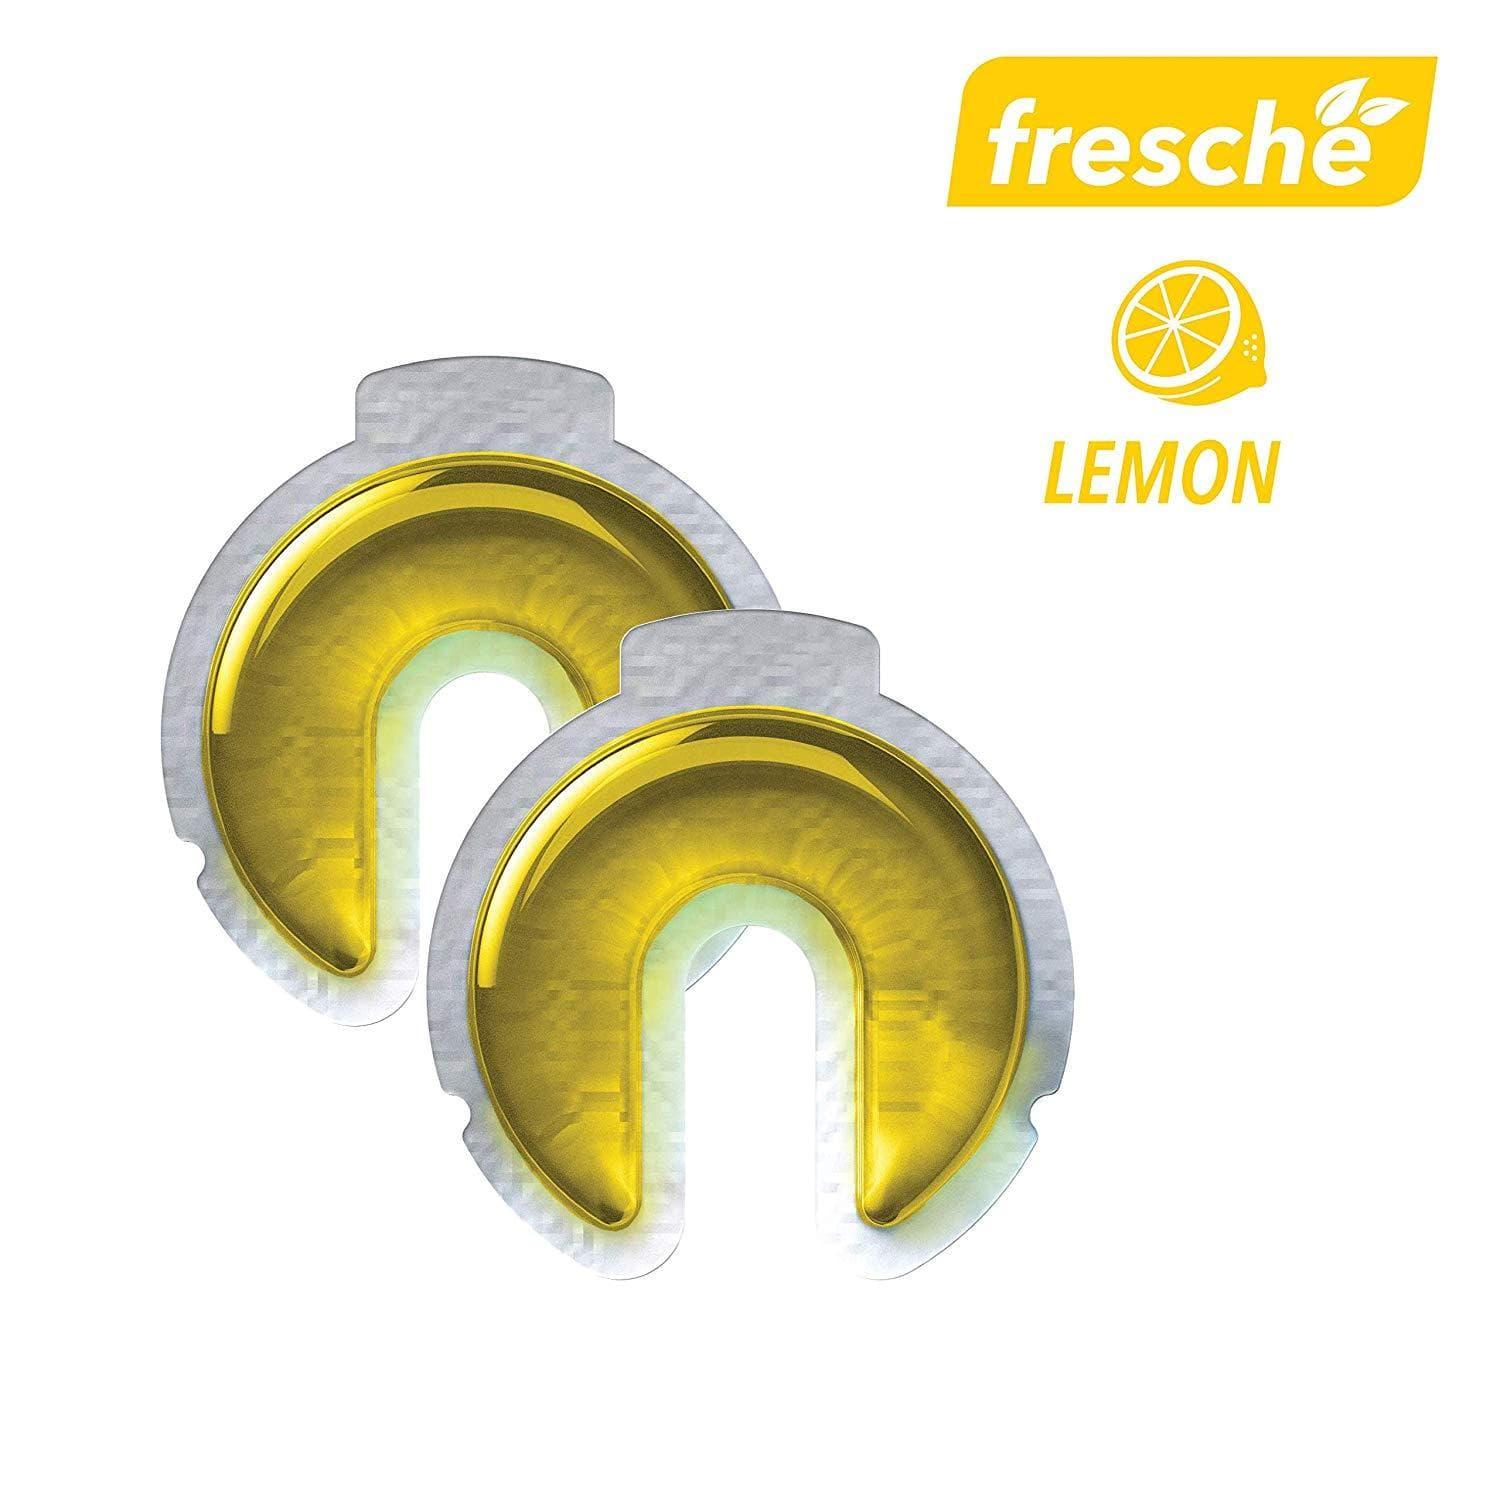 جهاز معطر الهواء لحامل الهاتف Scosche - Air Freshener Refill Cartridges for Fresche Mounts - ليمون